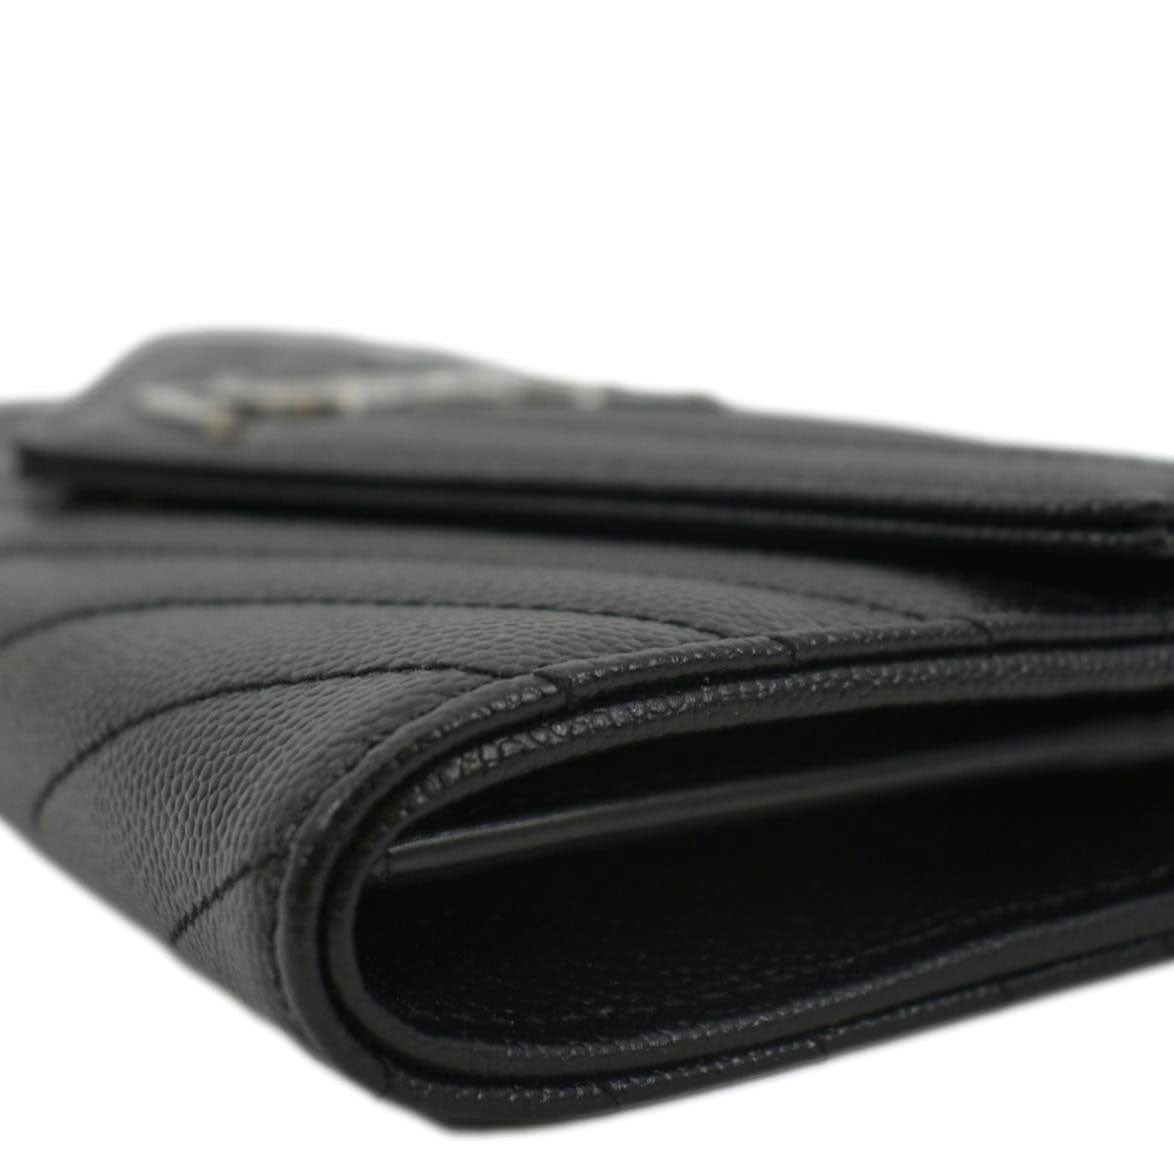 Yves Saint Laurent Monogram Grain de Poudre Leather Wallet